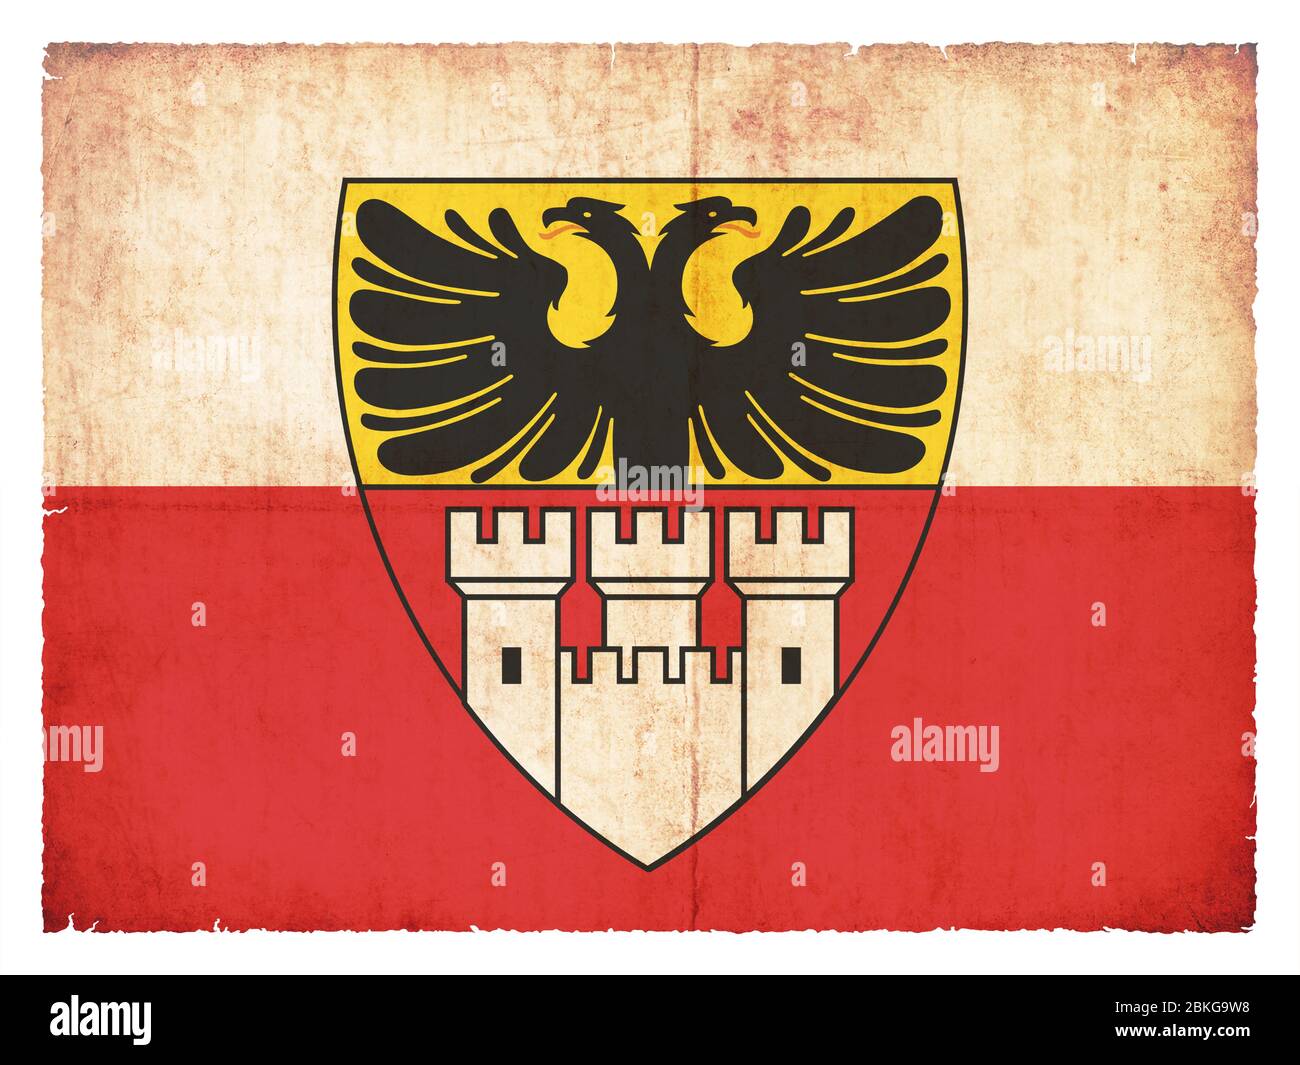 Bandera de la ciudad alemana Duisburg (Renania del Norte-Westfalia, Alemania) creado en estilo grunge Foto de stock